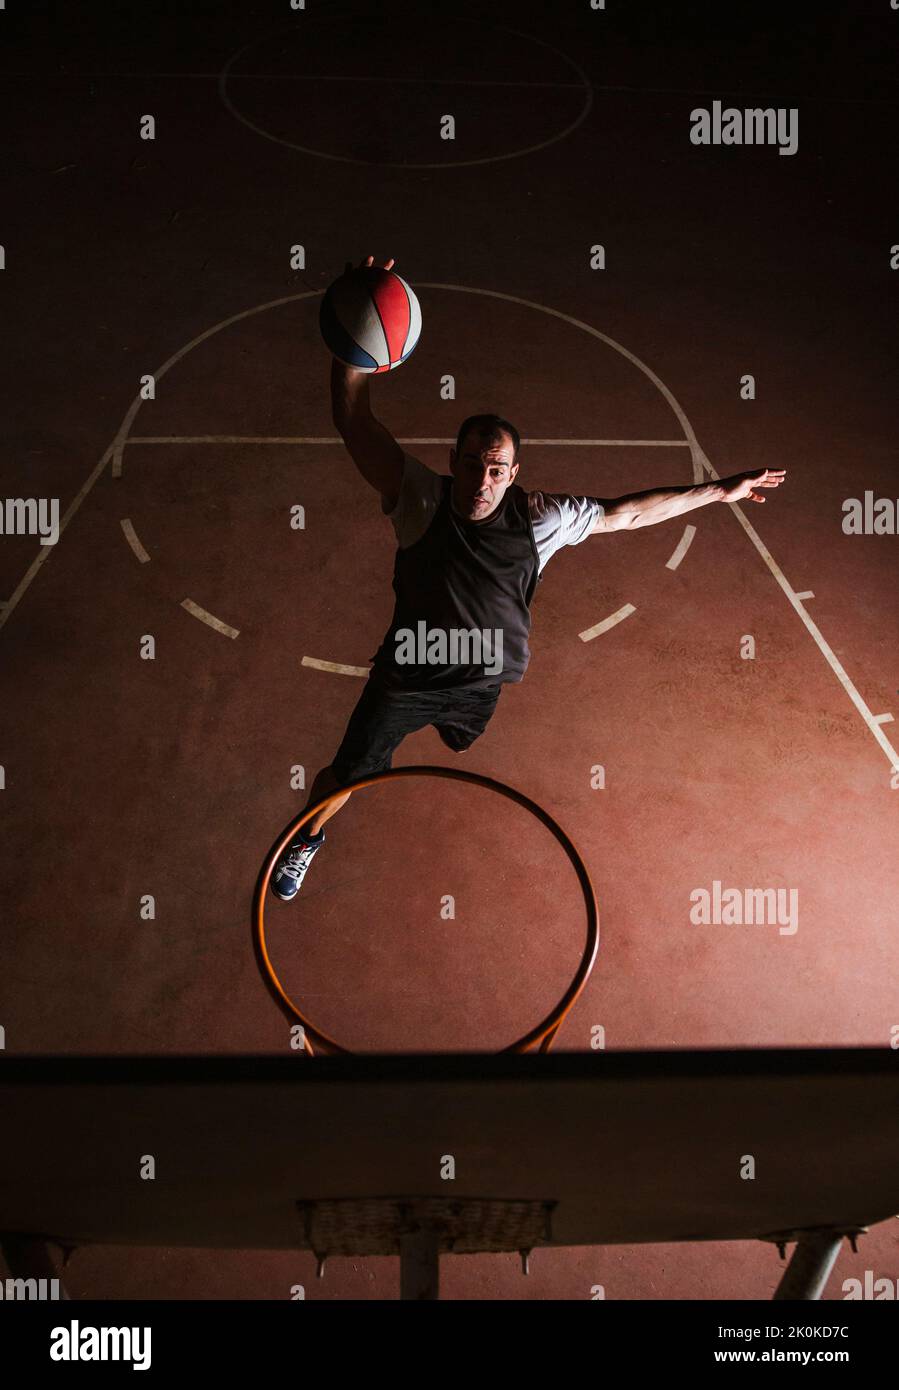 Basketballspieler in schwarz-weißen Sportkleidung springen und machen Dunk beim Training auf Sportplatz Stockfoto